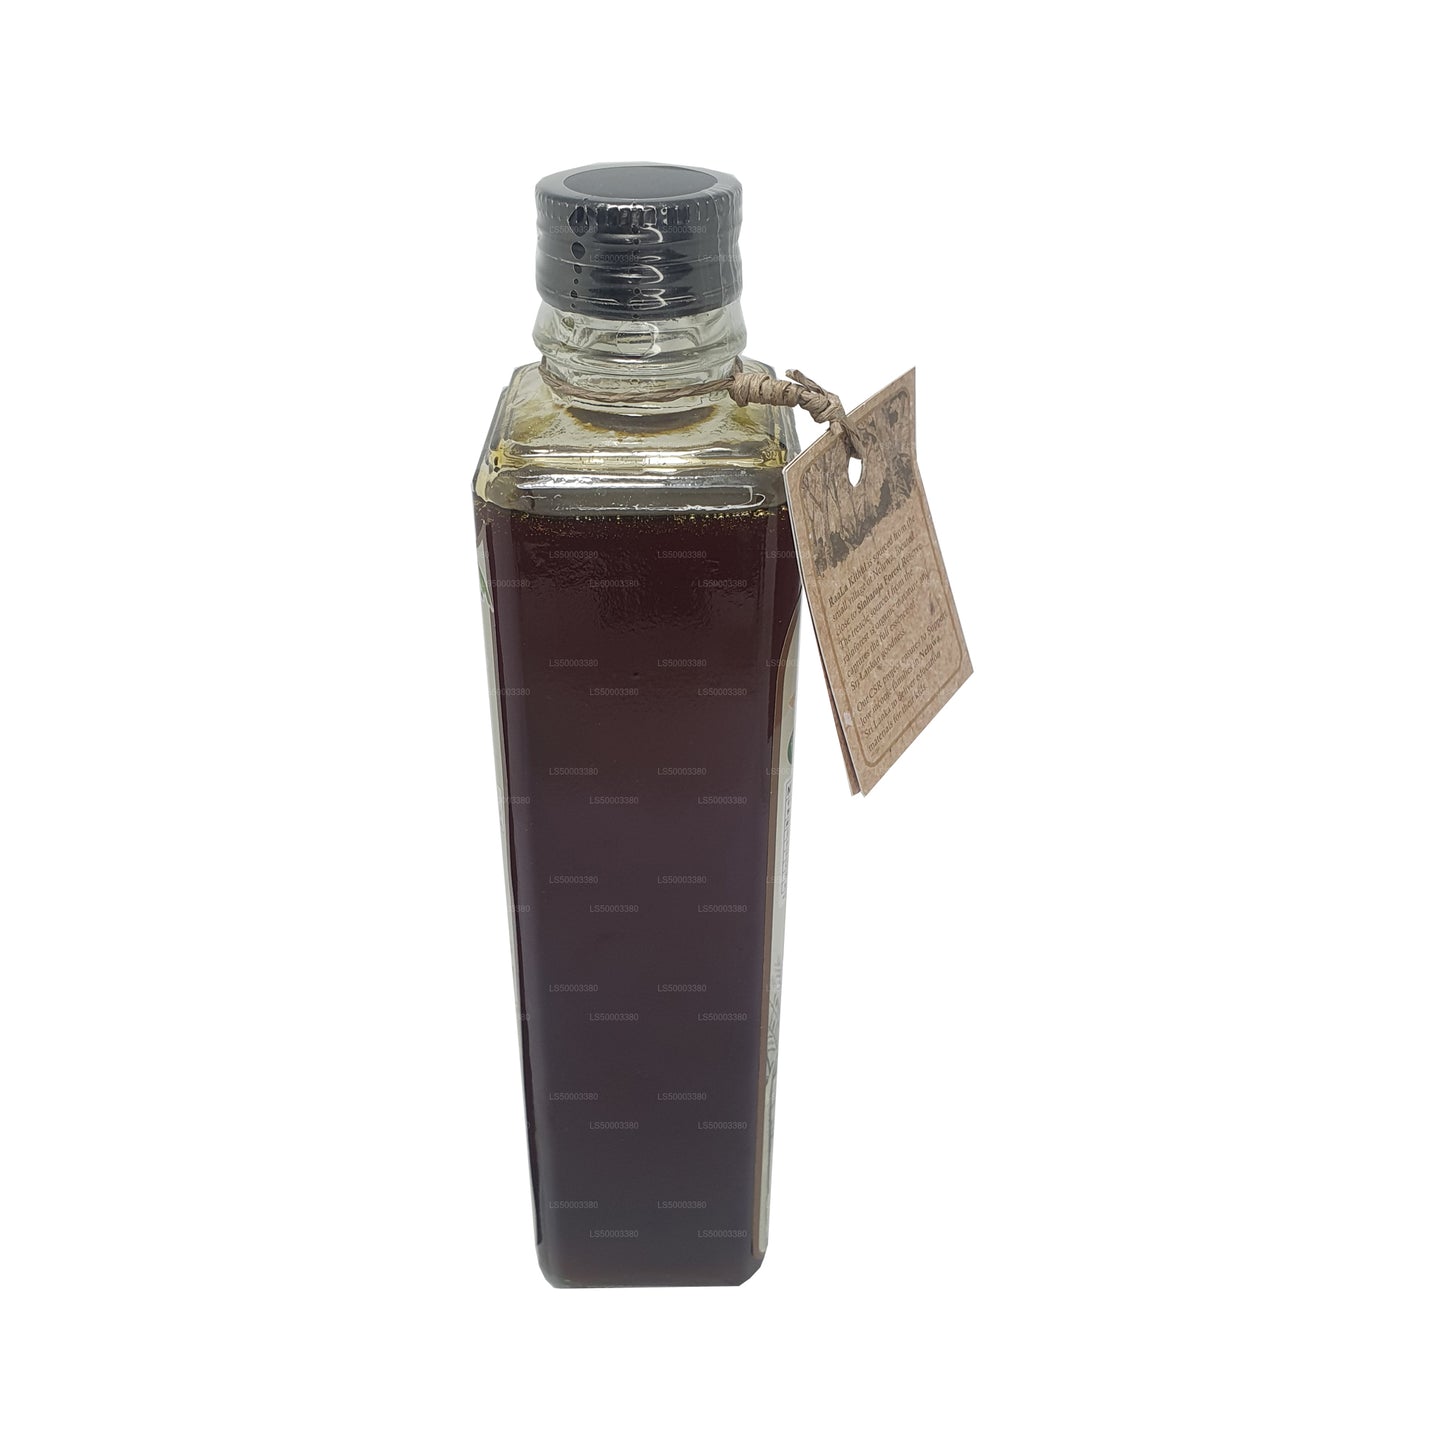 Raala Kithul Treacle (375 ml)